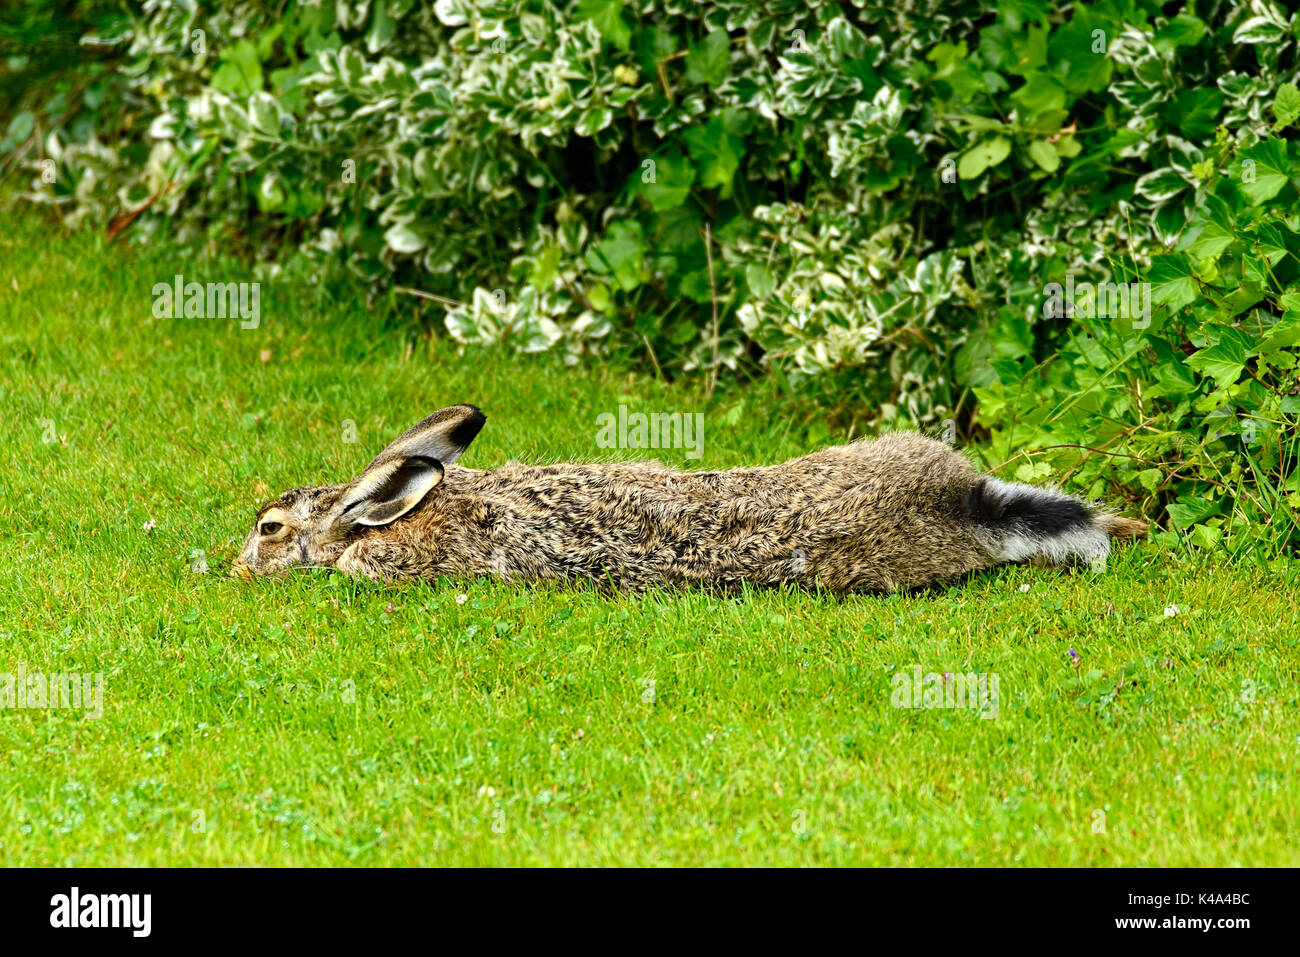 European Hare, Lepus Europaeus Stock Photo